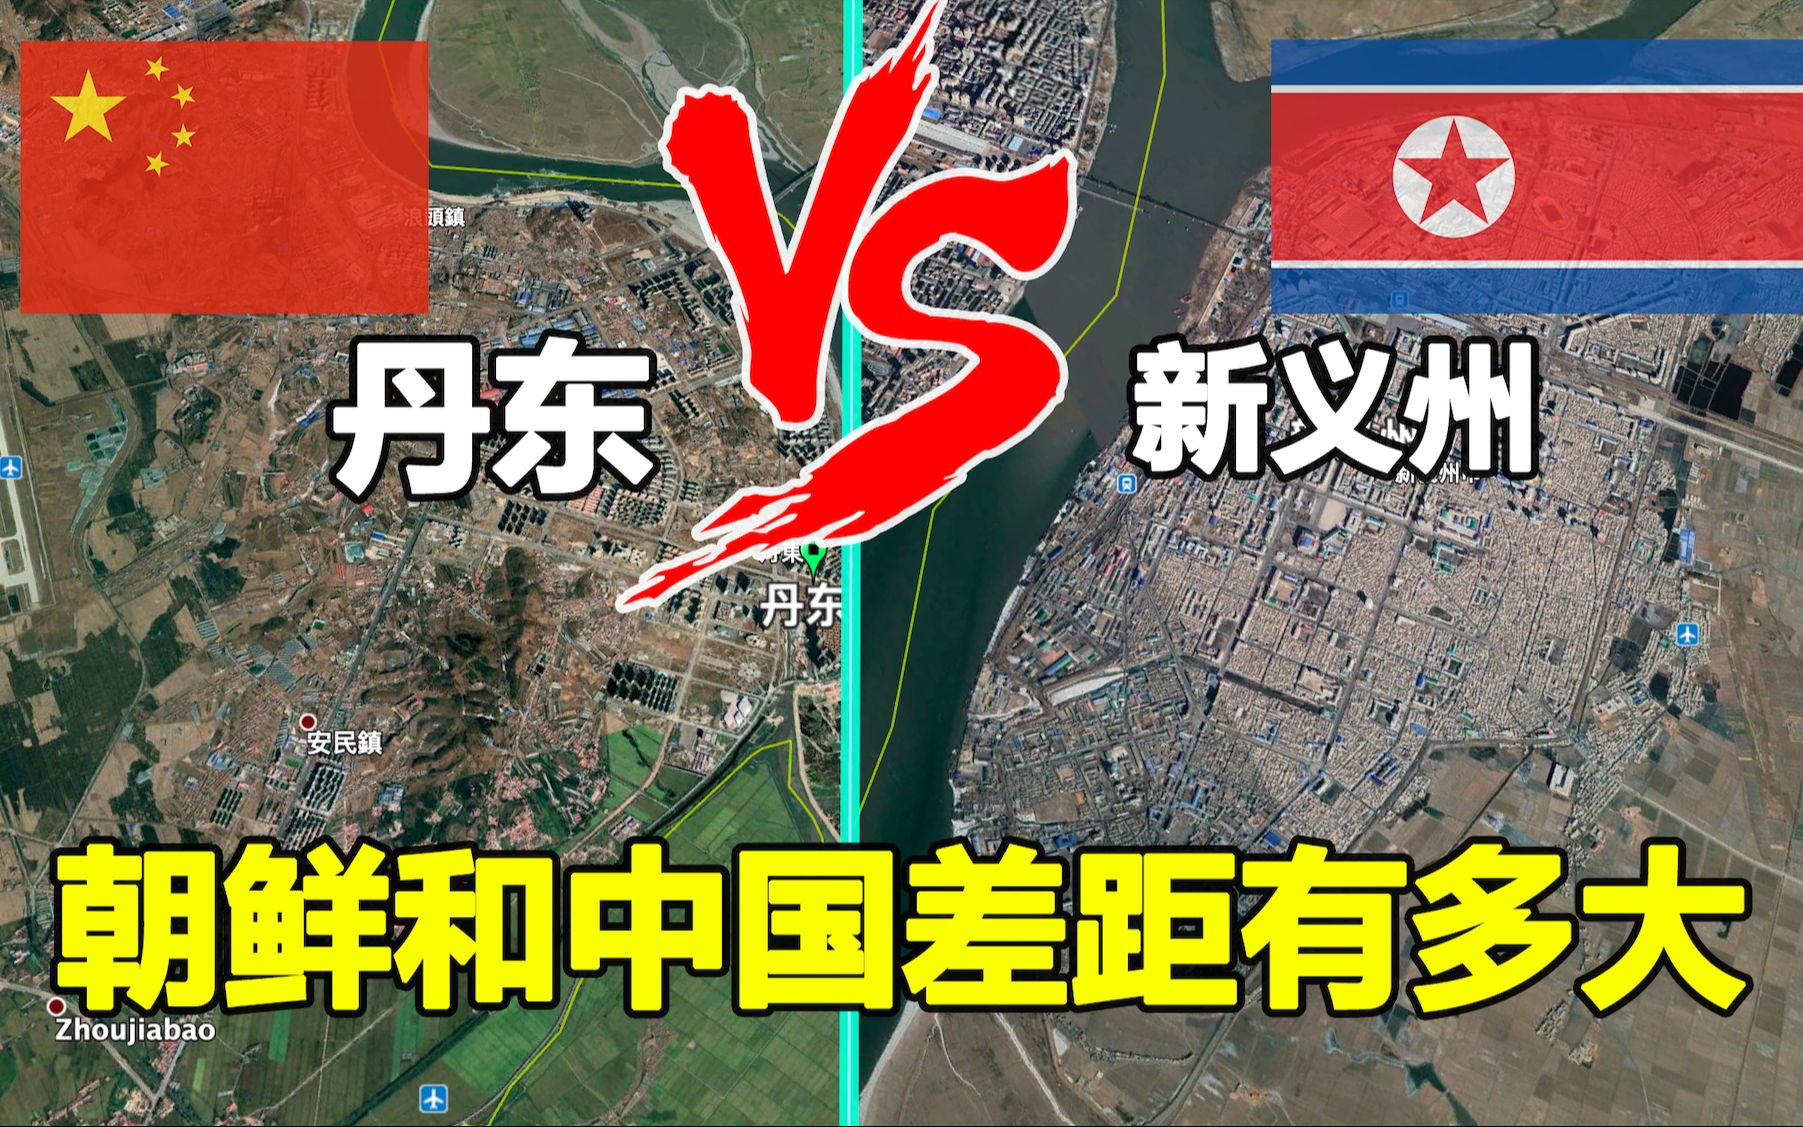 朝鲜与中国哪个省接壤图片